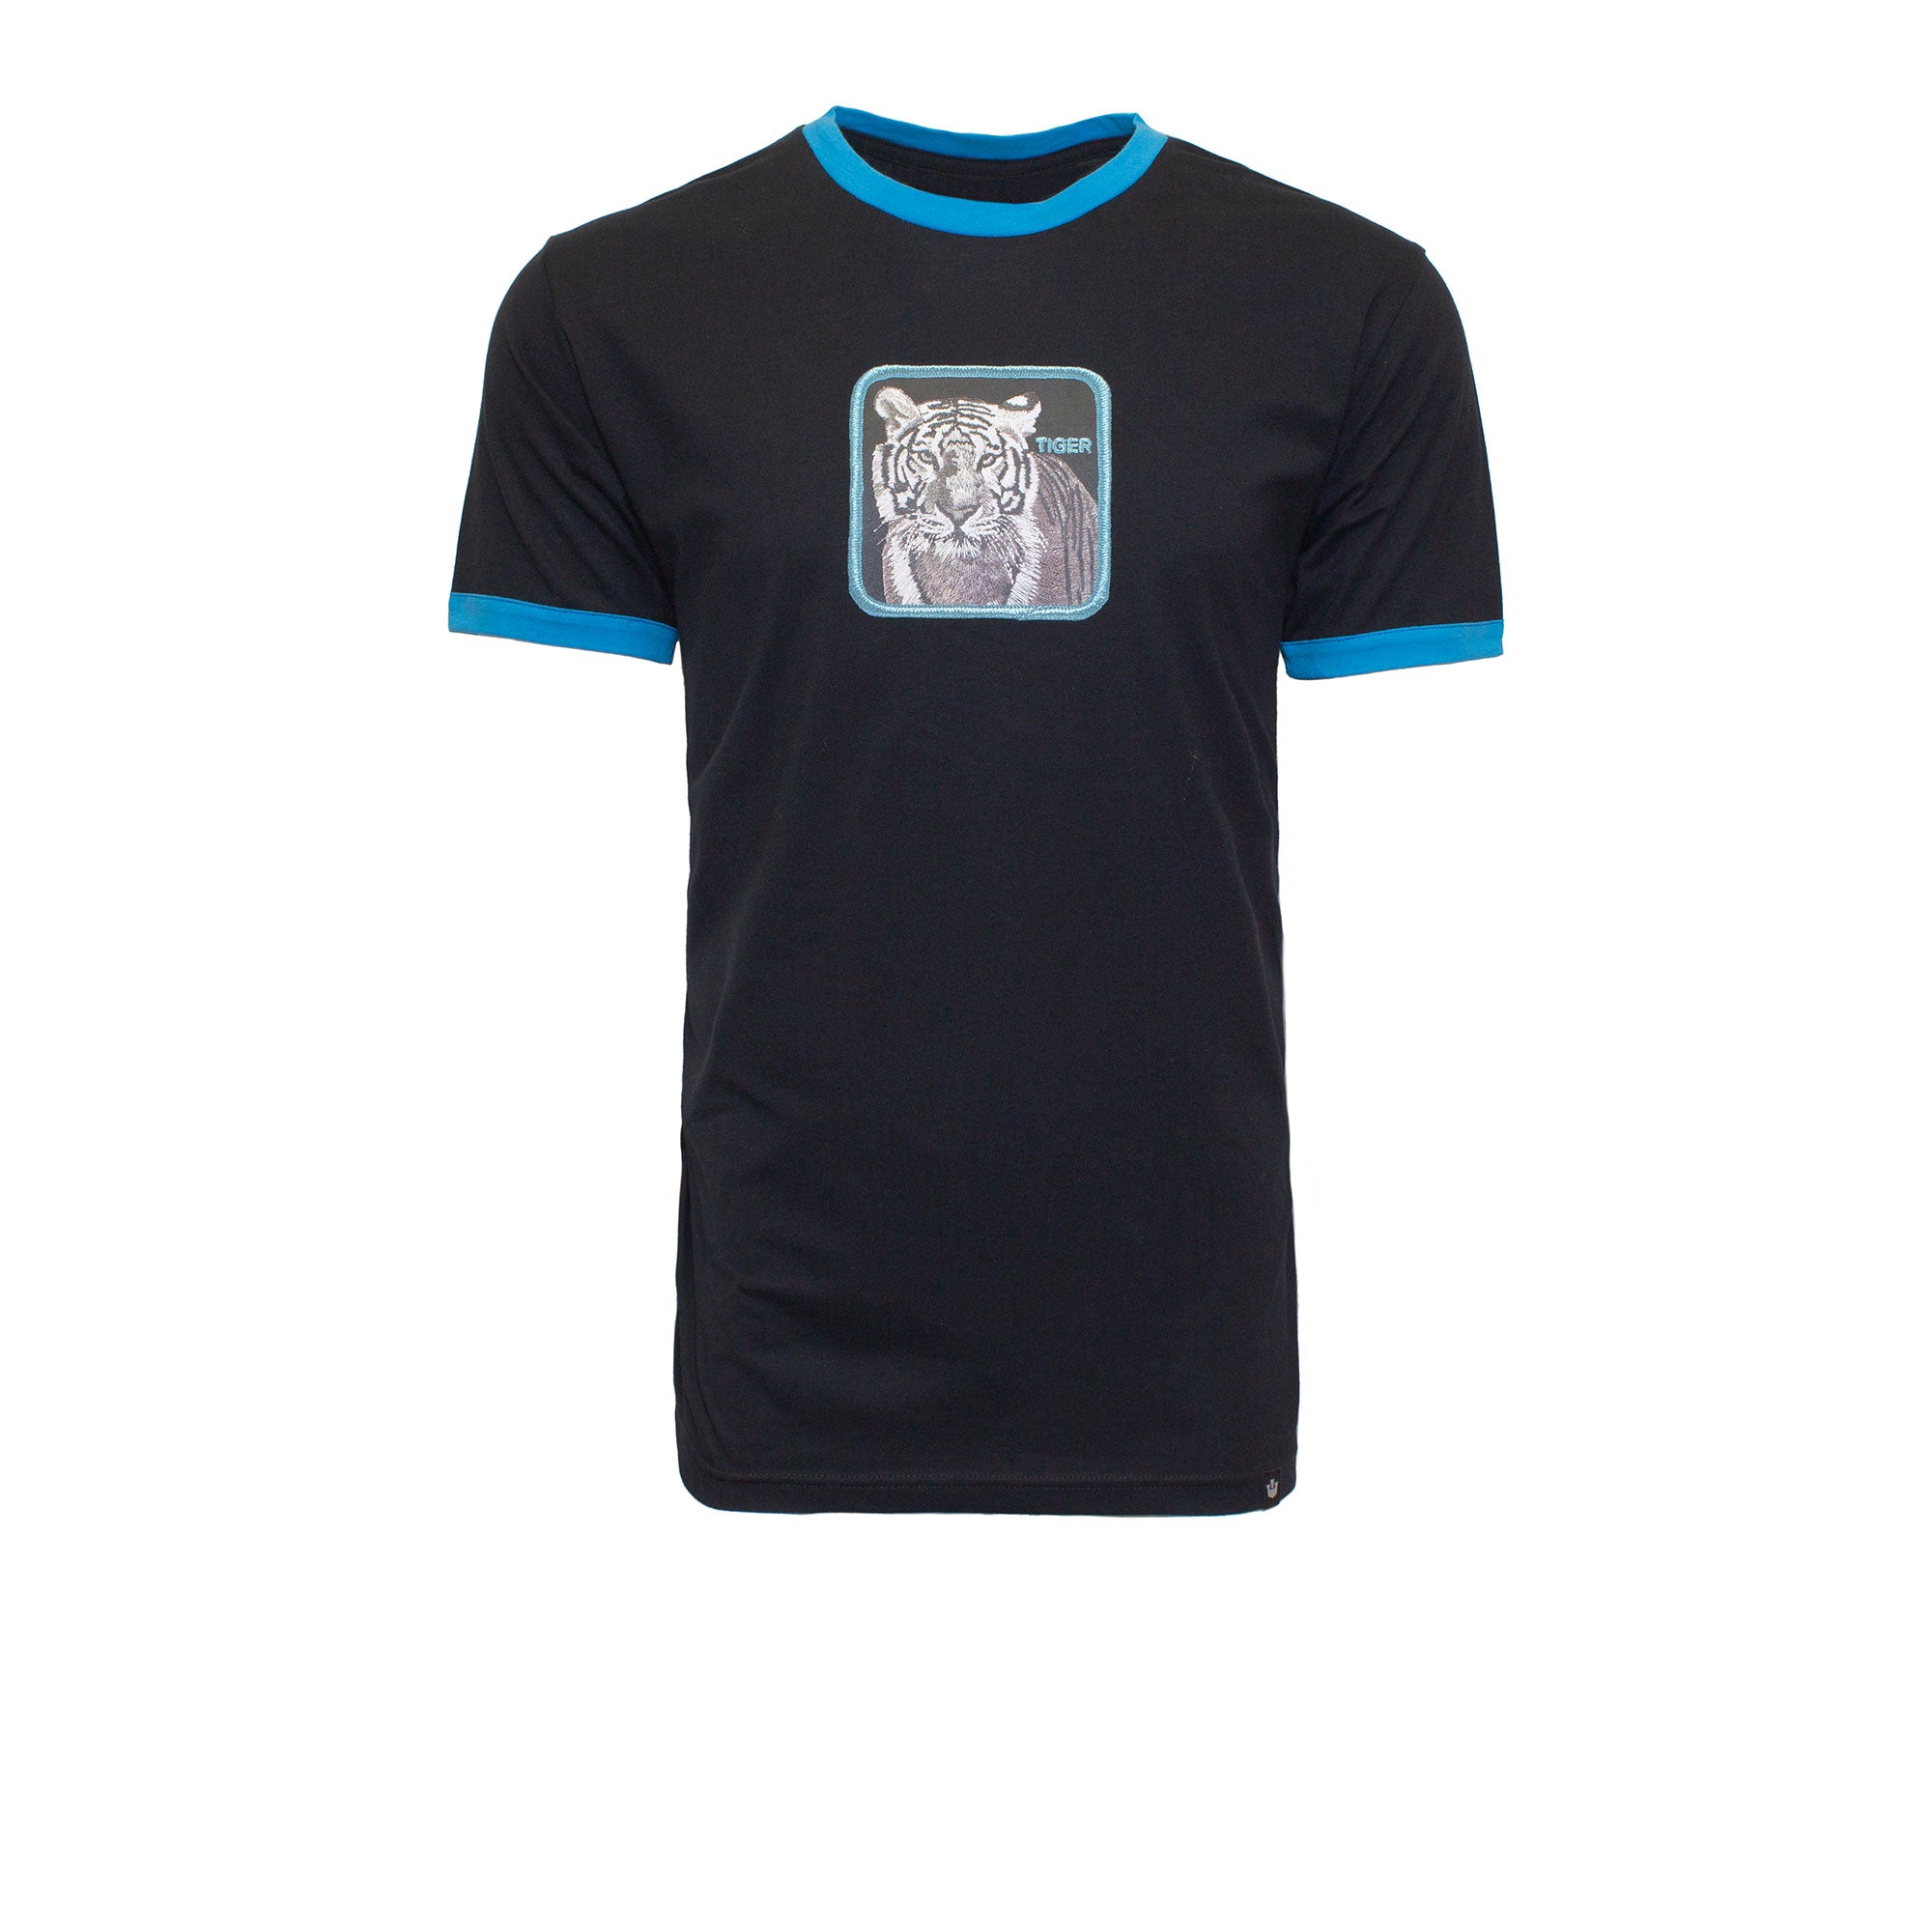 Tiger Fierce Face Glow' Men's T-Shirt